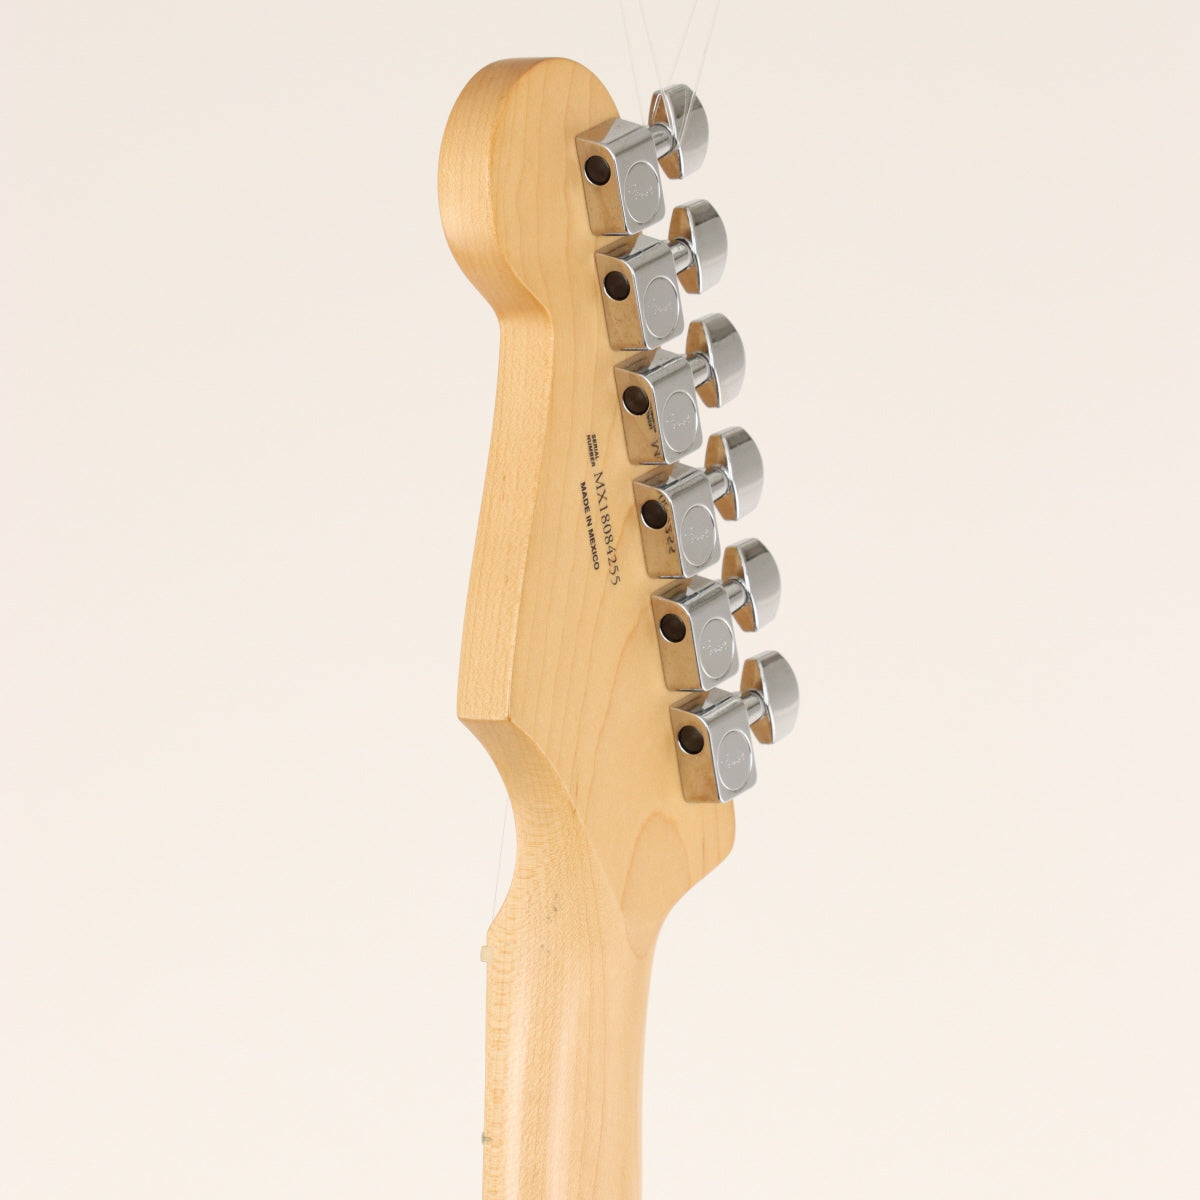 [SN MX18084255] USED Fender Fender / Player Stratocaster HSS Buttercream [20]